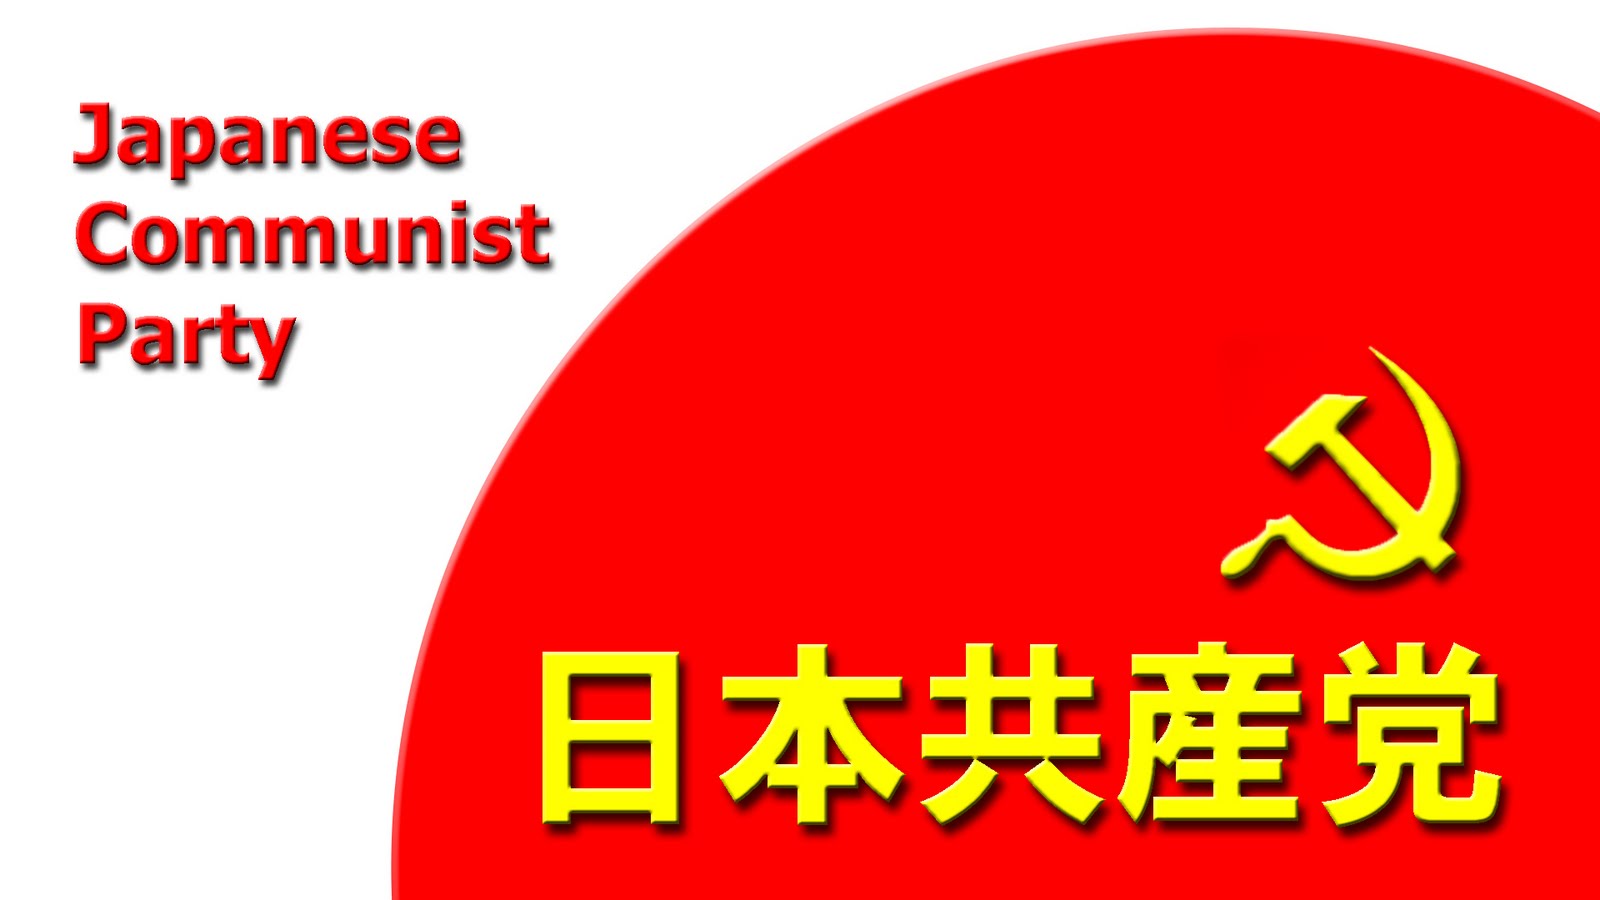 6,5 millions de voix et 12,19% des suffrages pour le Parti Communiste Japonais (JCP)